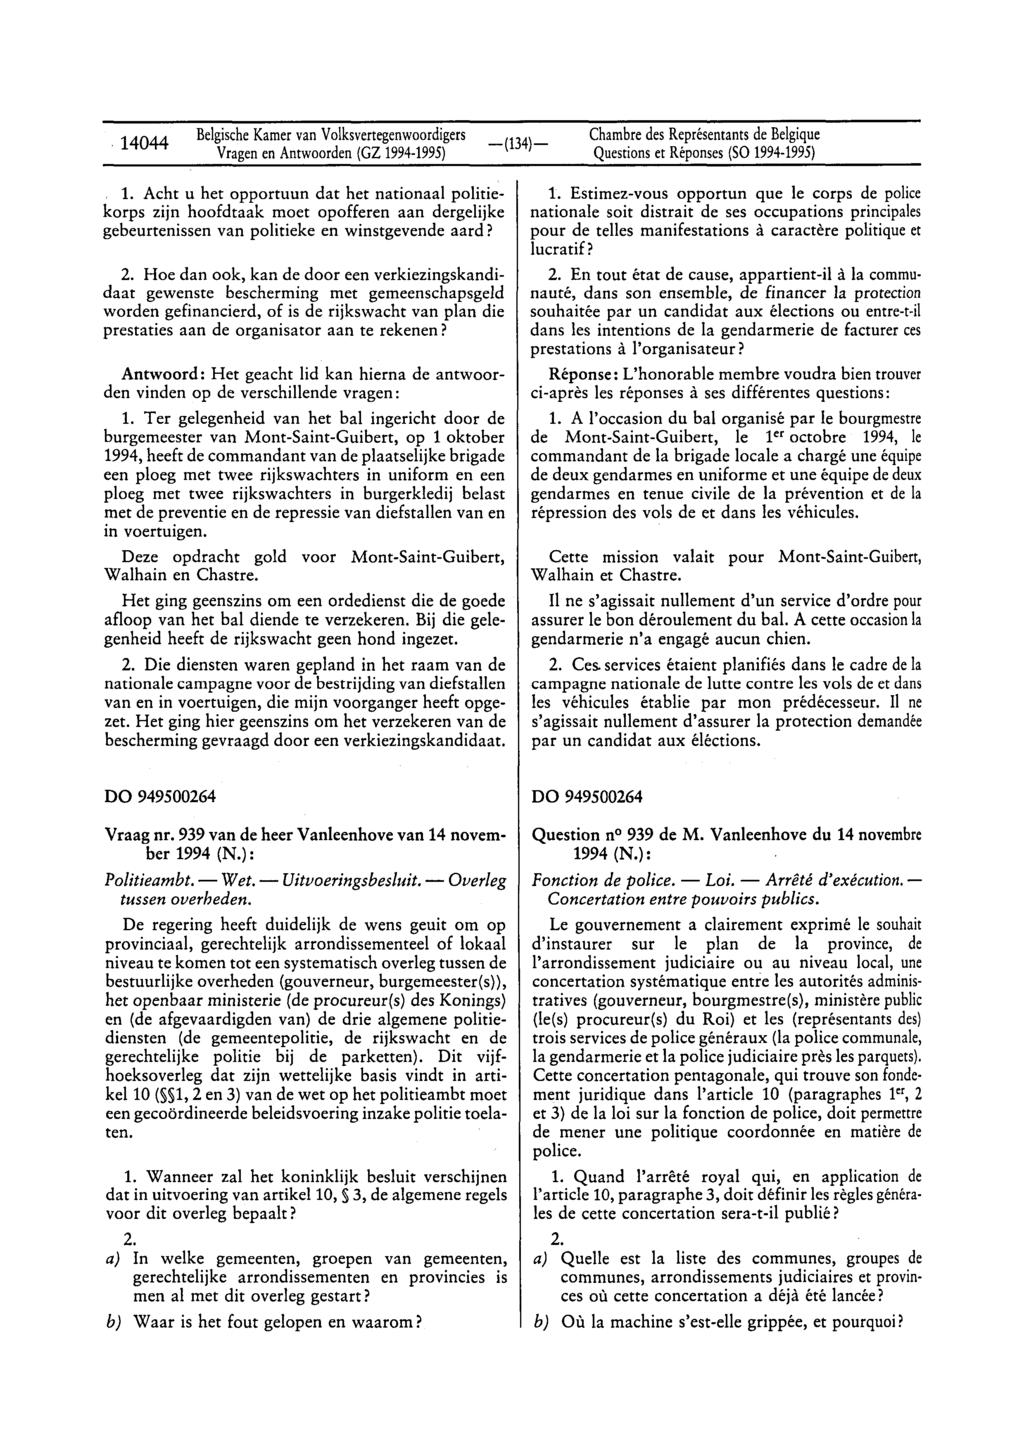 14044 BelgischeKamervan Volksvertegenwoordigers Questionset Réponses(SO 1994-1995) 1.